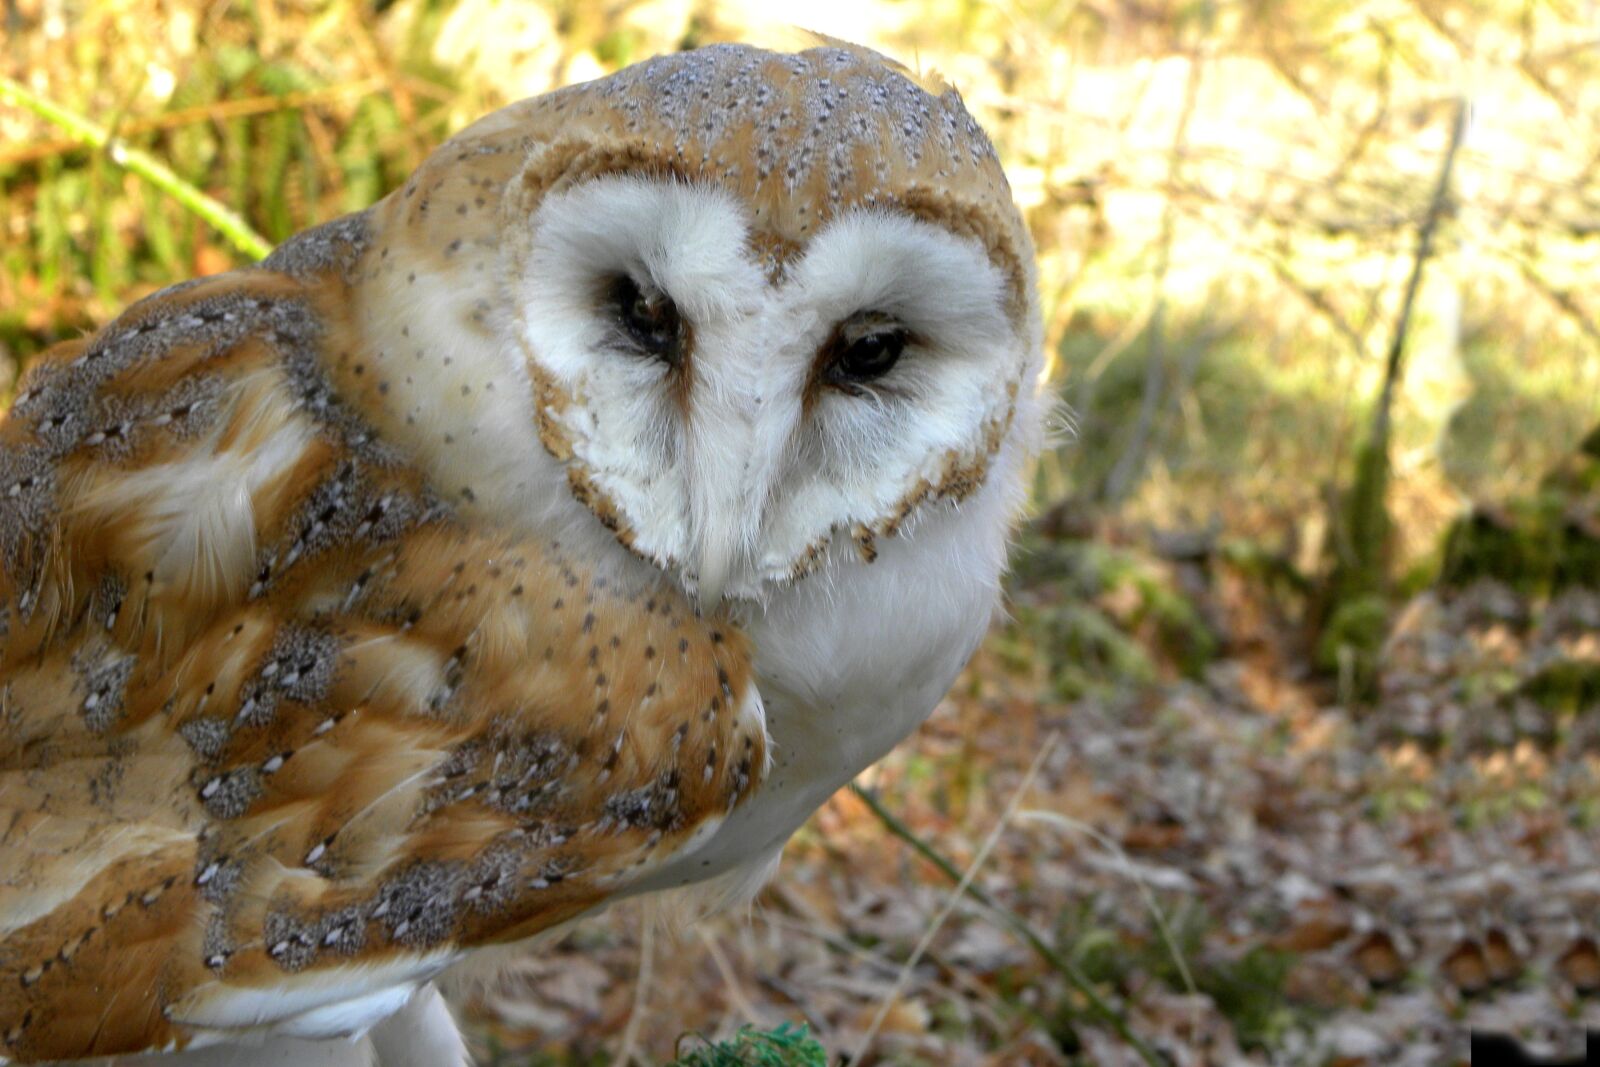 Nikon Coolpix P90 sample photo. Barn owl, bird, nature photography